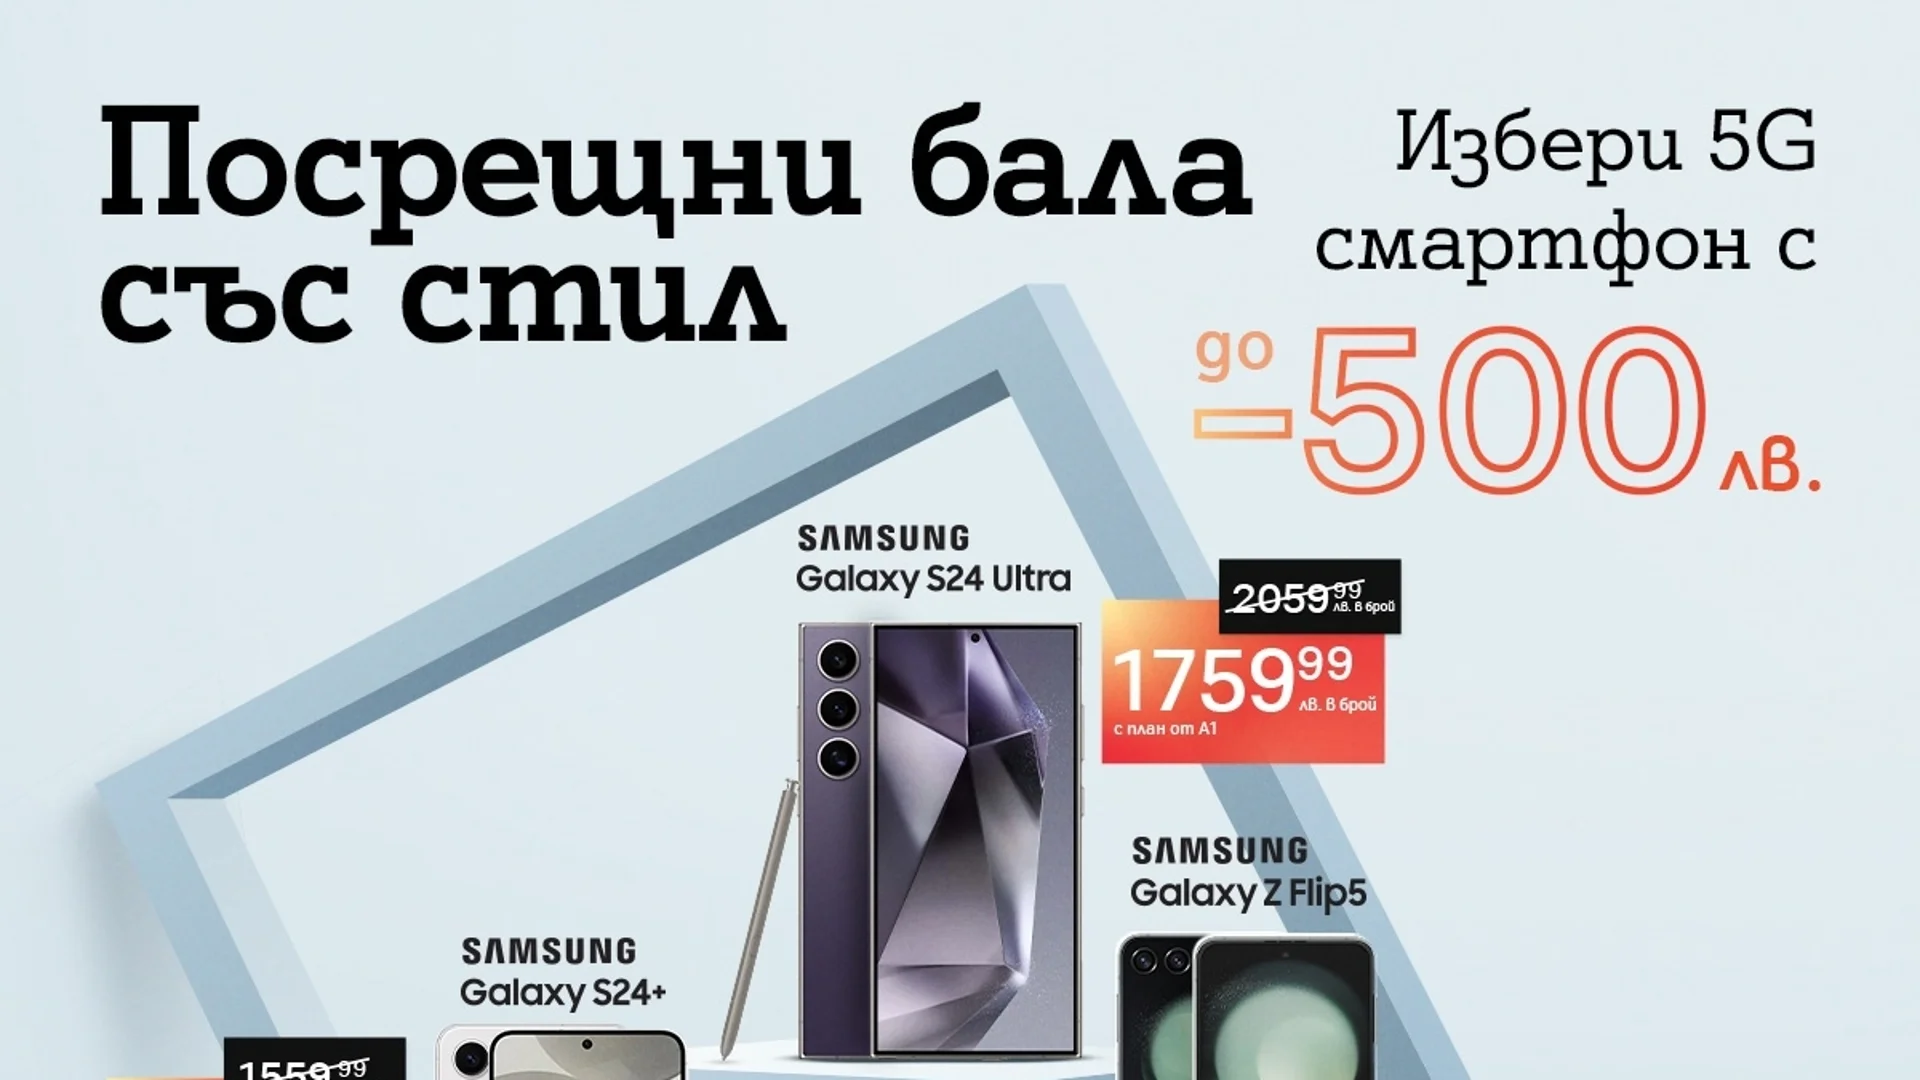 Флагманите на Samsung през май идват на специални цени от А1 с отстъпка до 500 лева и план Unlimited от А1